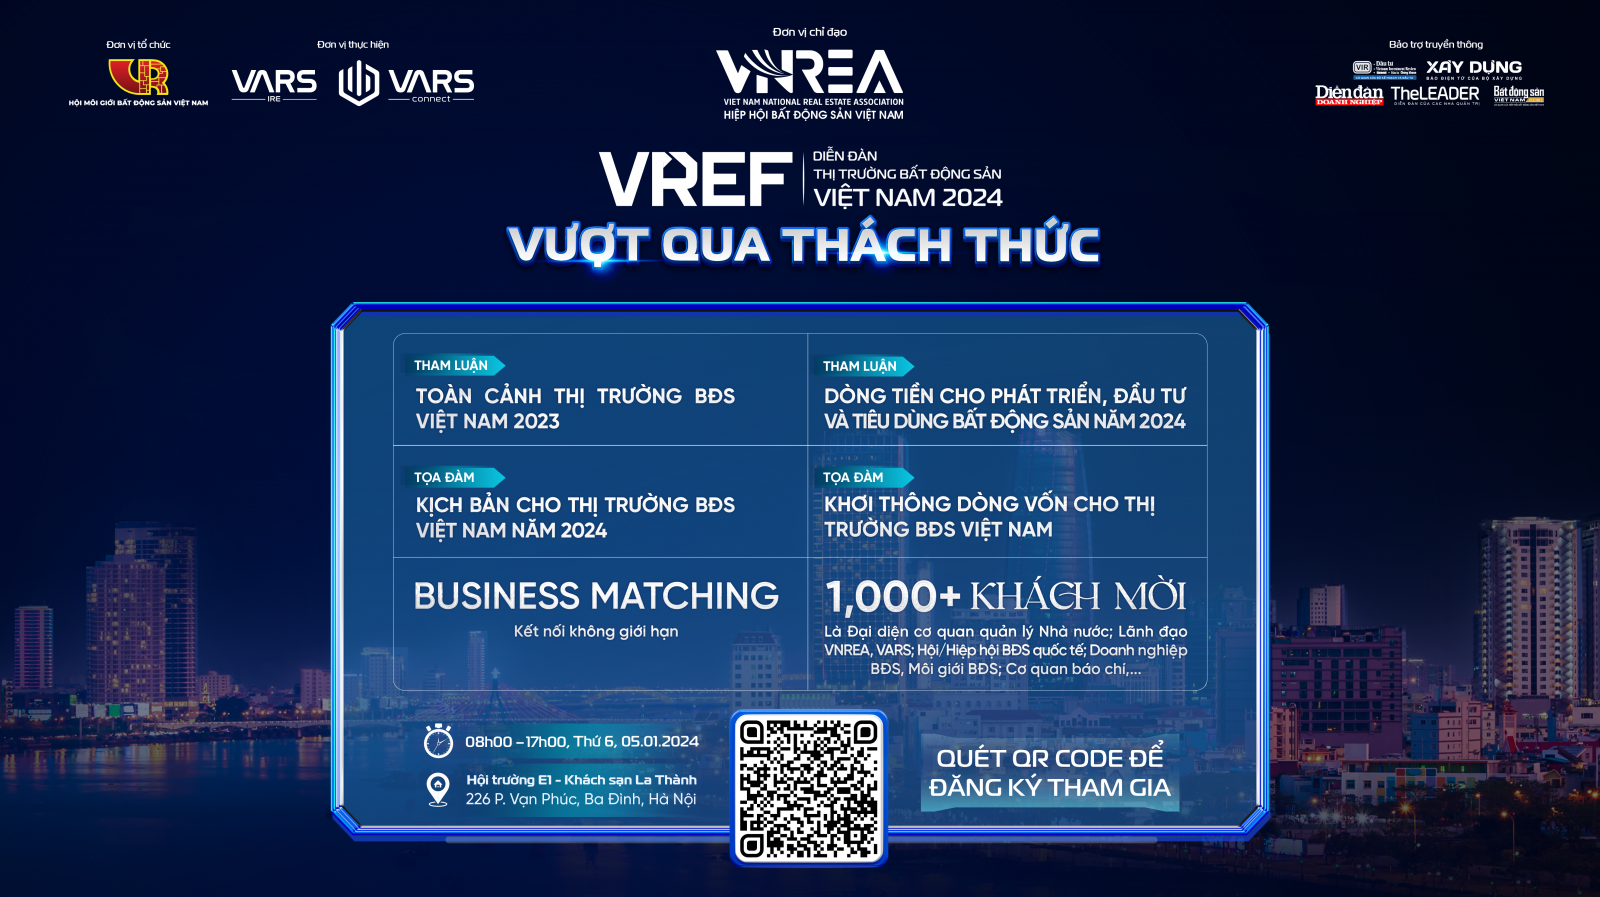 VREF 2024 sẽ cung cấp cái nhìn toàn diện về thị trường bất động sản Việt Nam trong năm 2023, làm nổi bật những động thái và xu hướng quan trọng